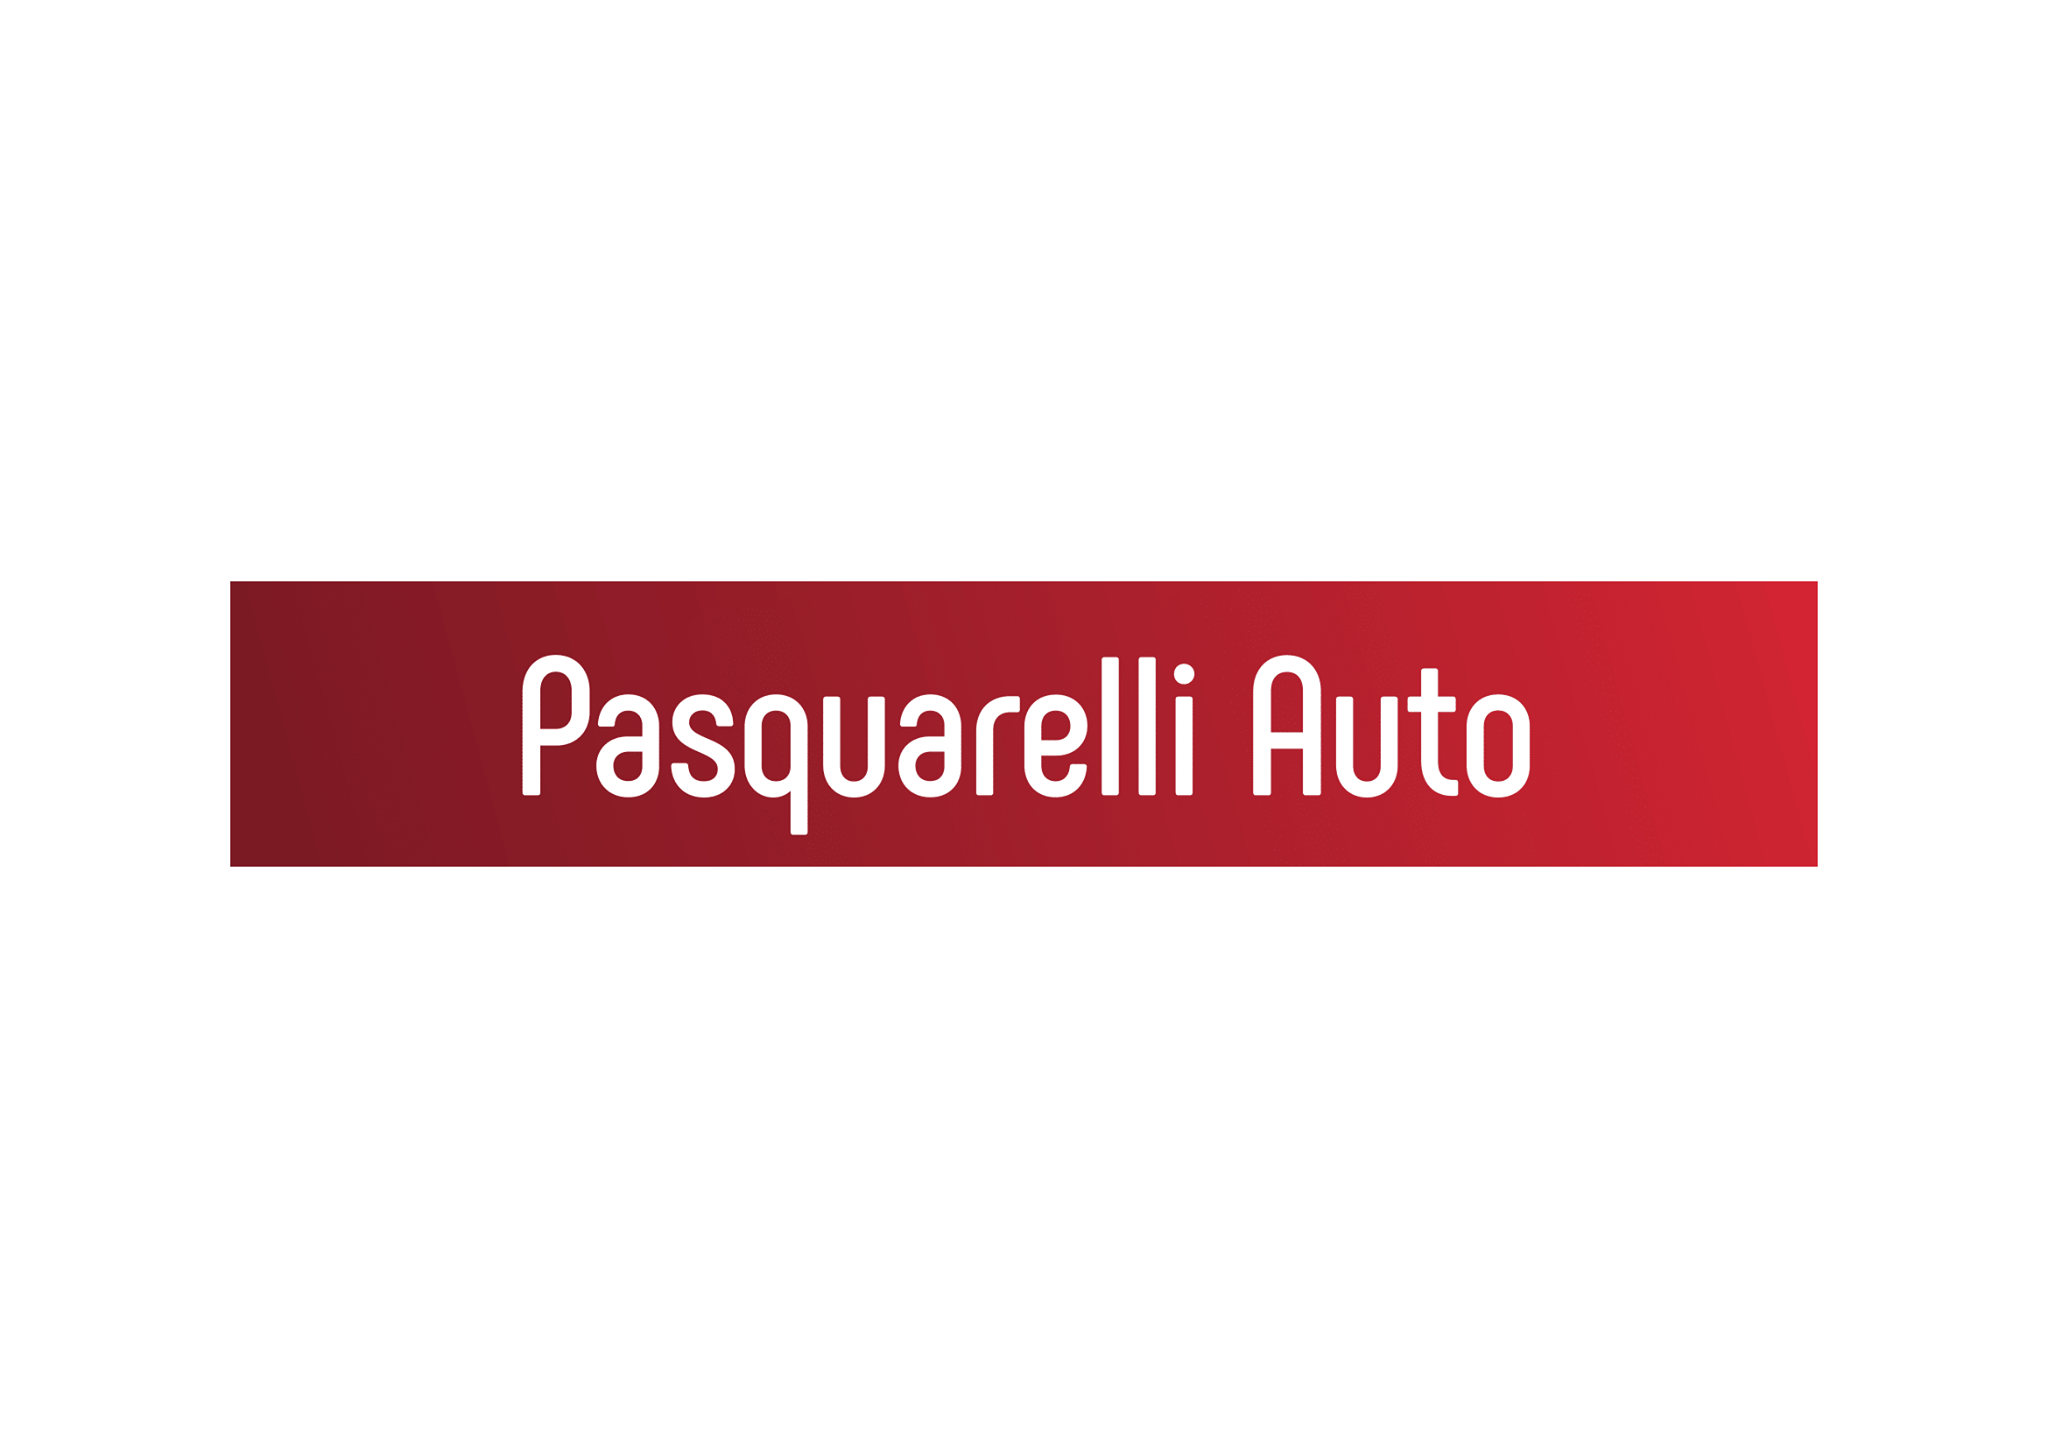 Pasquarelli Auto